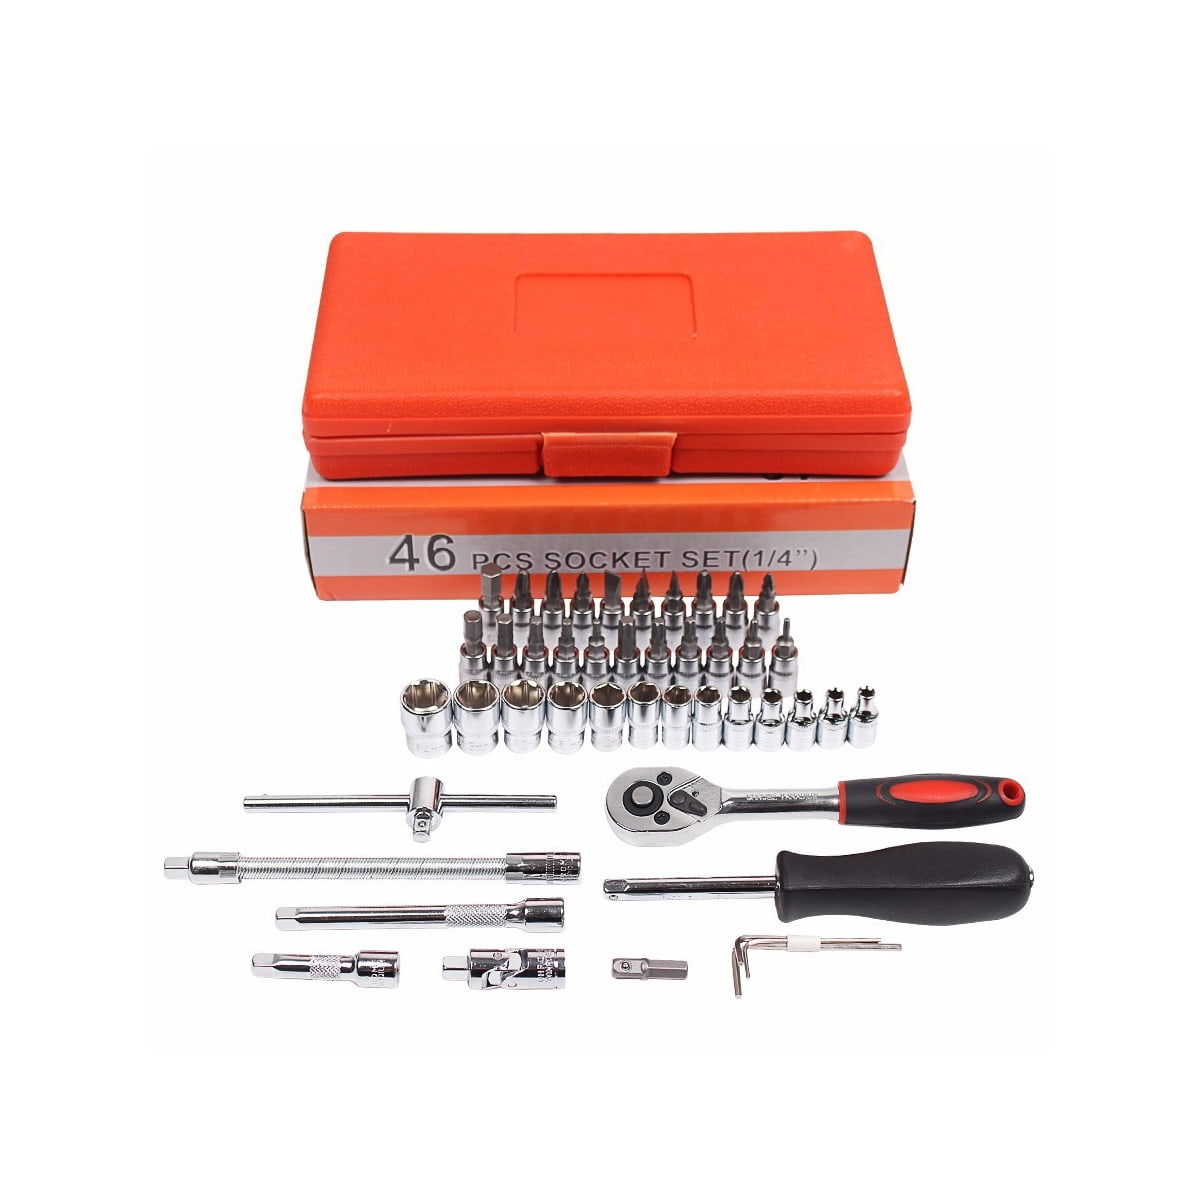 46 peças 1/4' dr crv aço métrico caixa de ferramentas para reparo de carro conjunto de ferramentas chave soquete com cabo de catraca